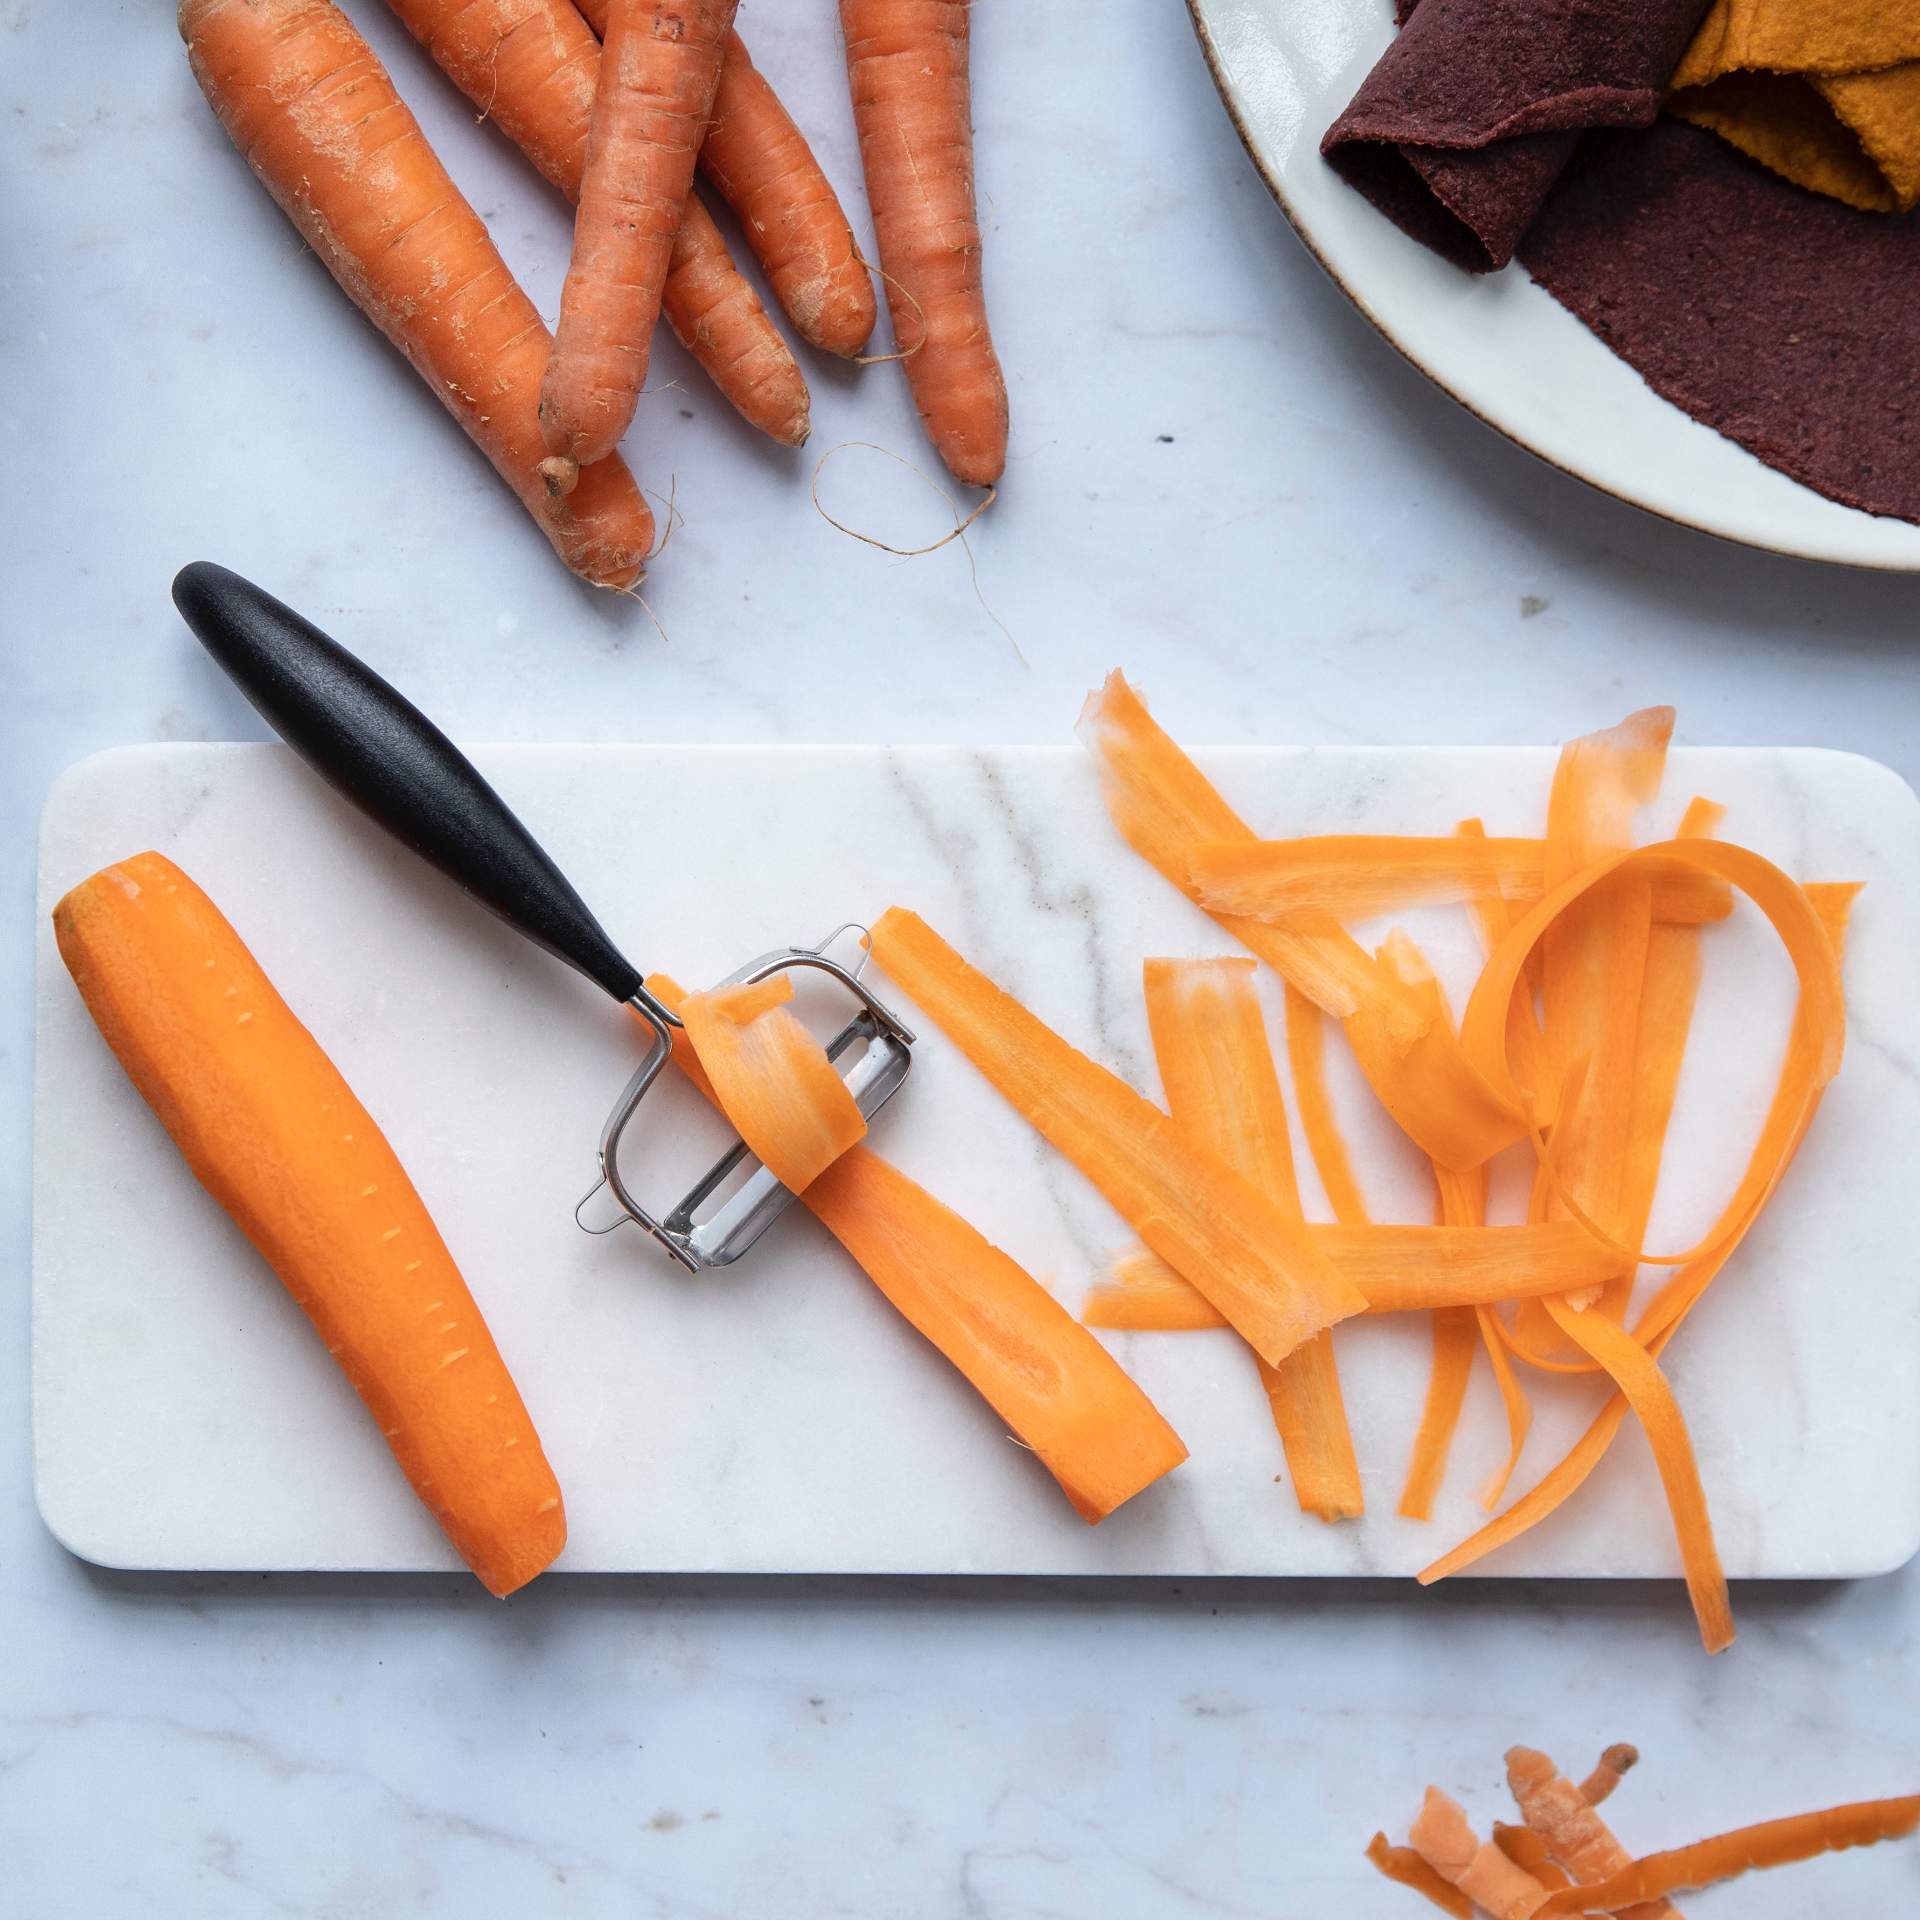 Karotten werden mit einem Sparschäler zu dünnen Streifen geschnitten